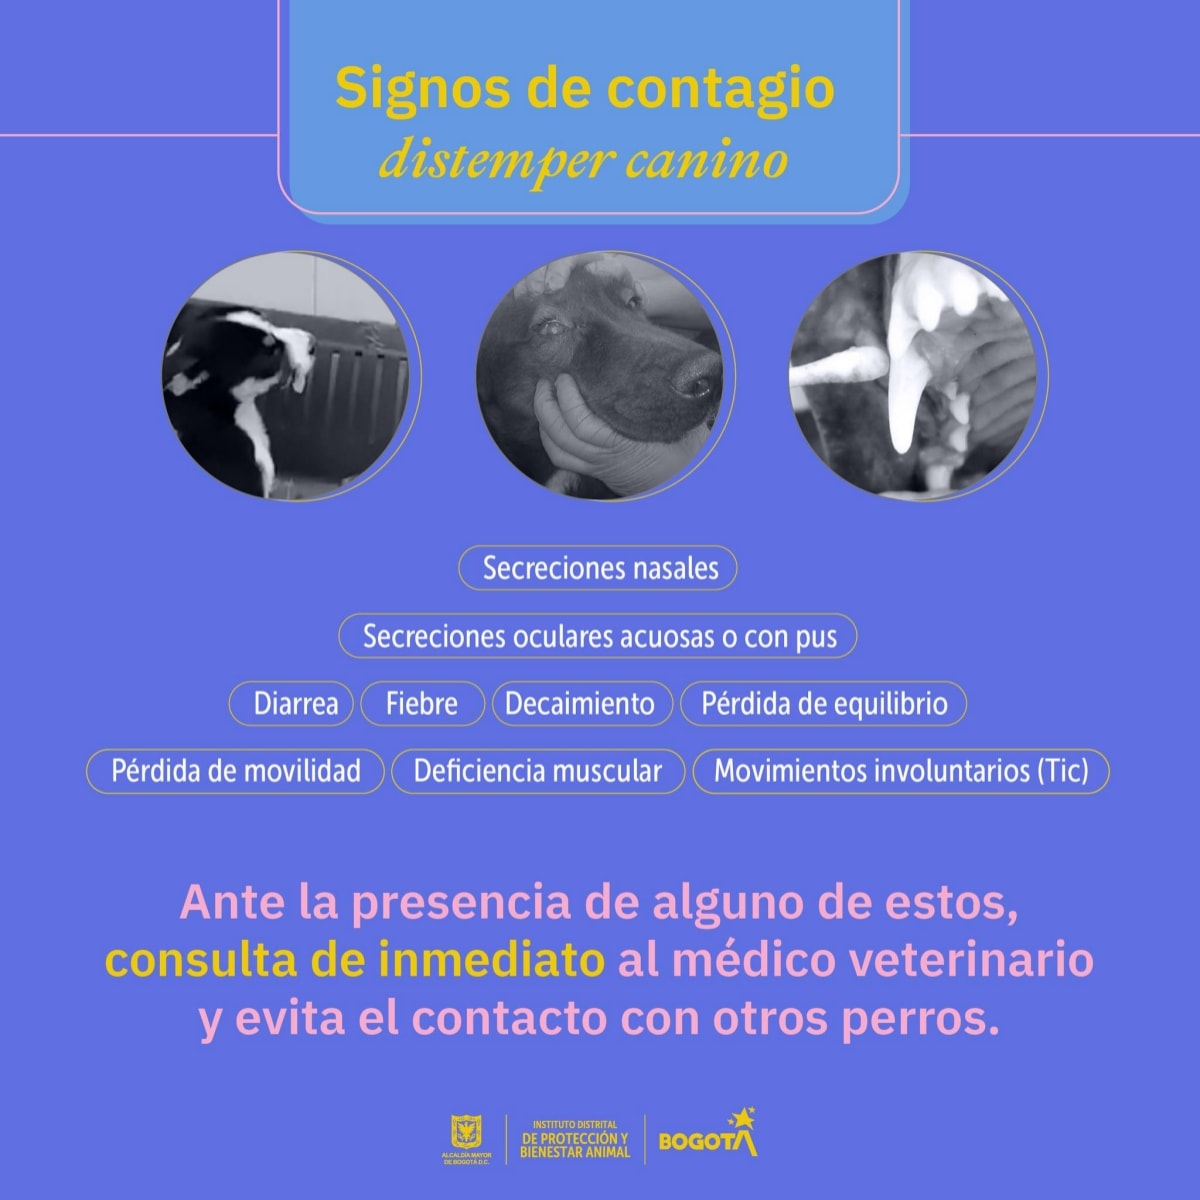 27-07-2022, Noticia: Brote de Moquillo / Distemper Canino en Bogotá